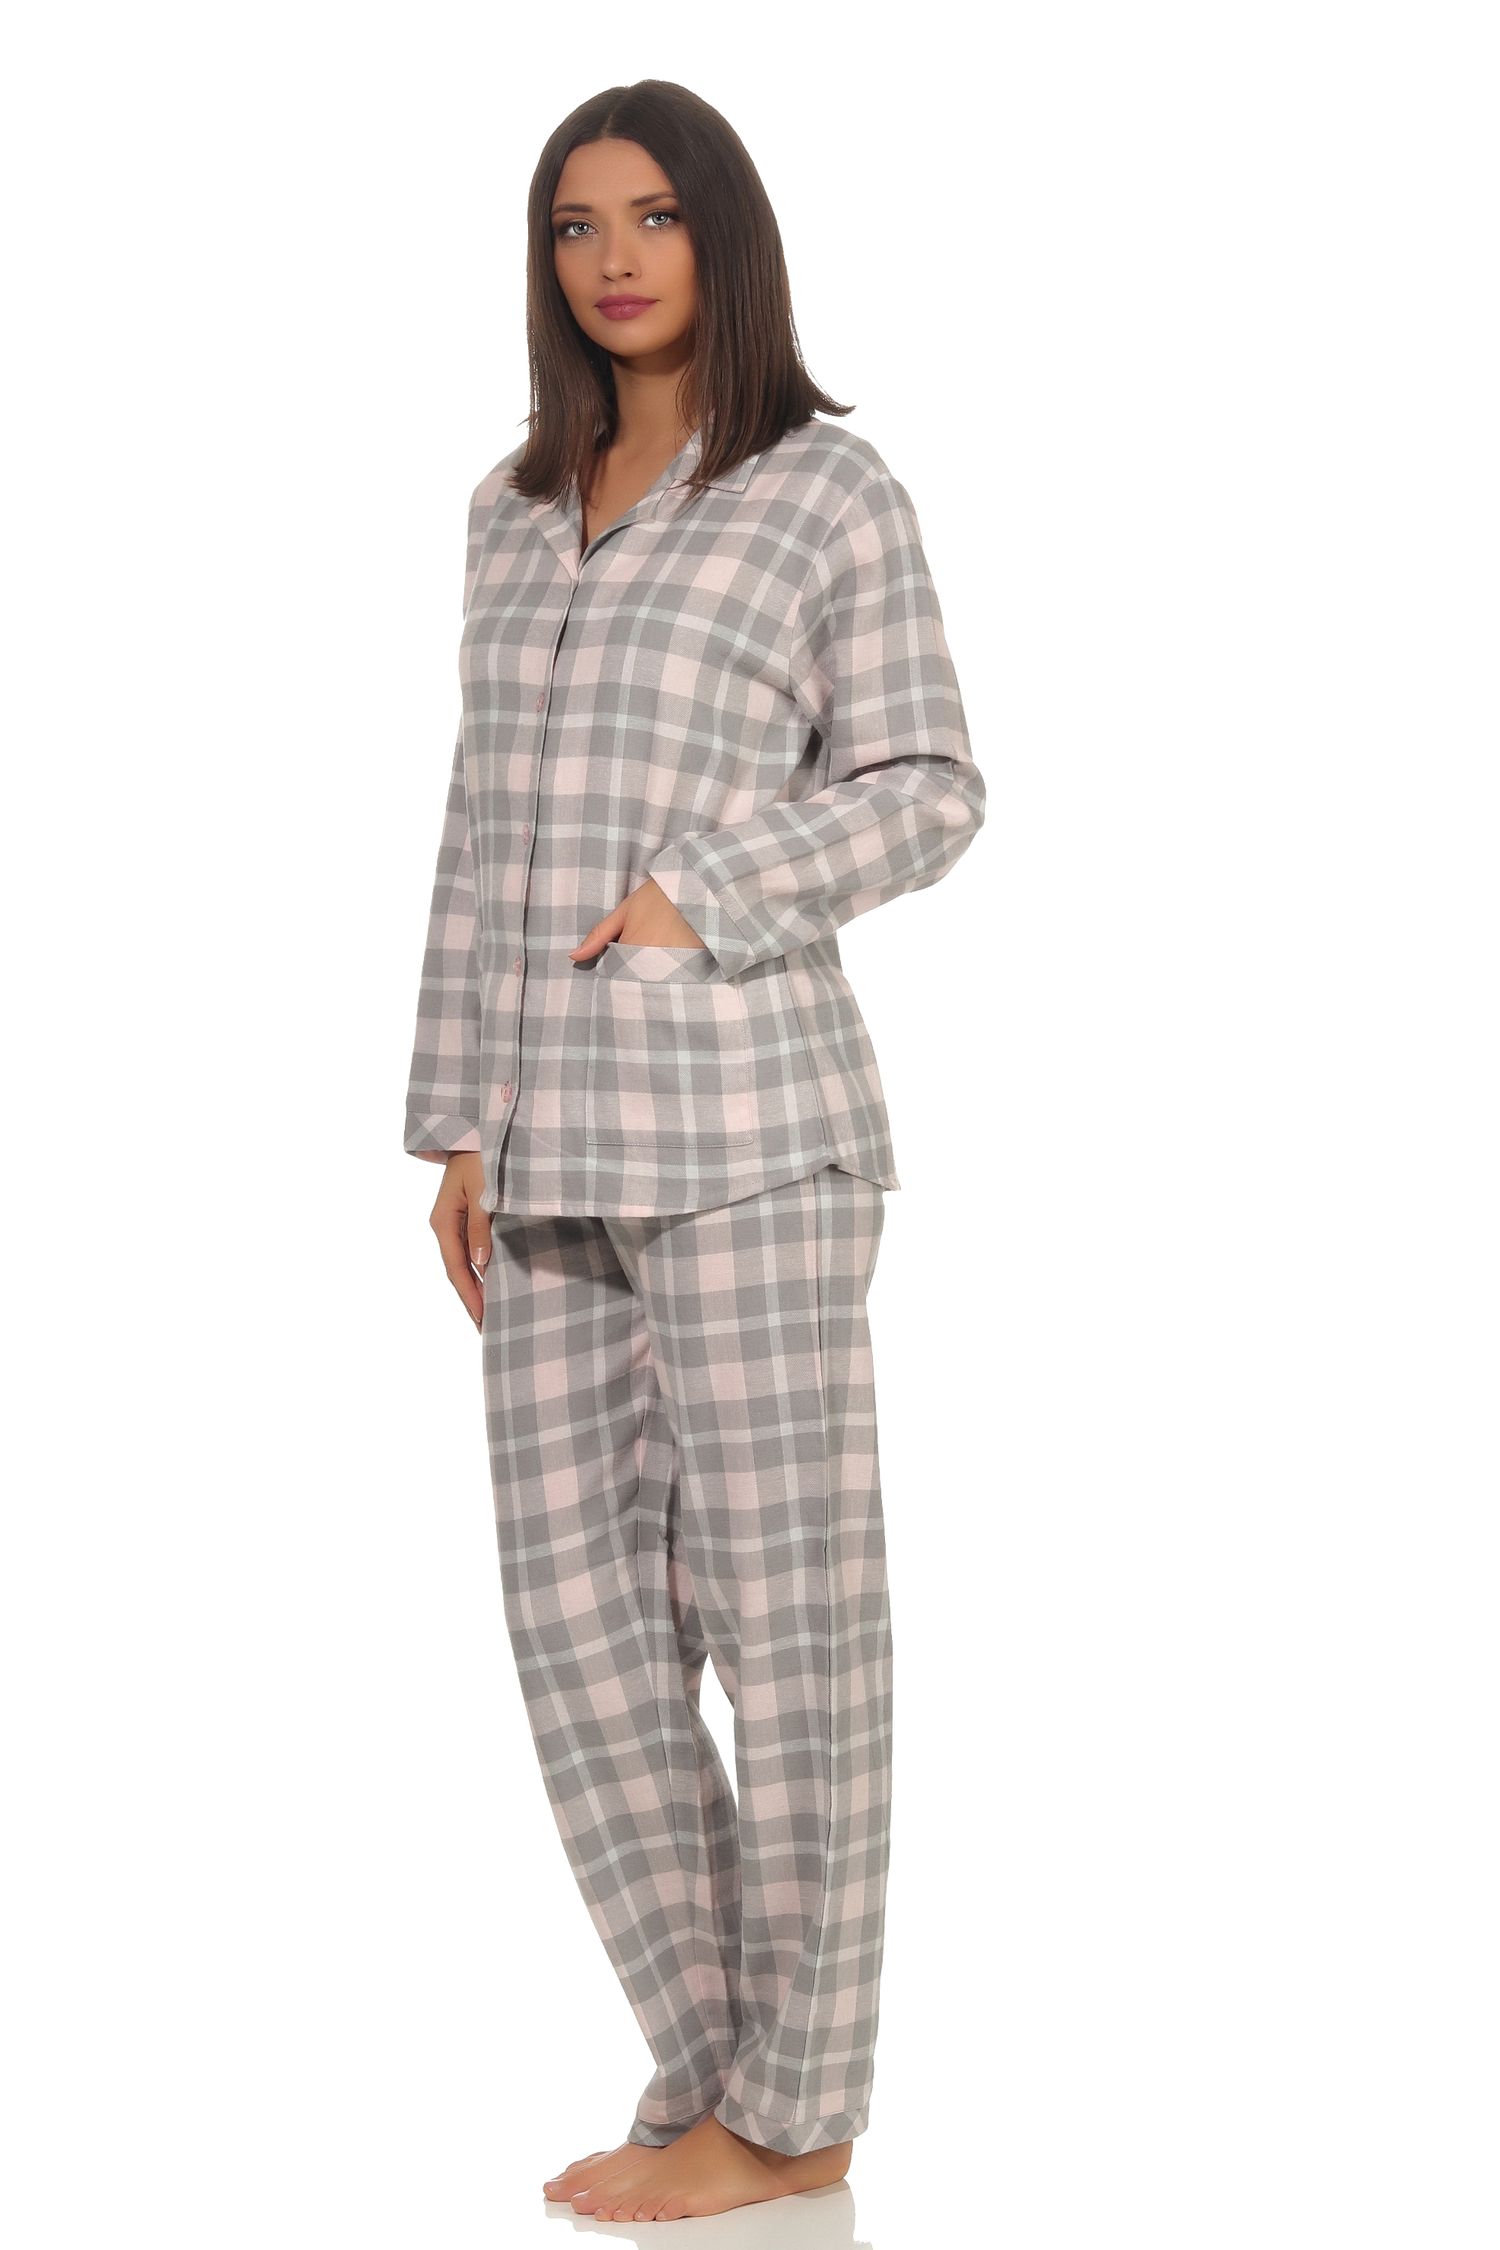 Damen Flanell Pyjama Schlafanzug kariert mit Knopfleiste und Hemdkragen - 291 201 15 556